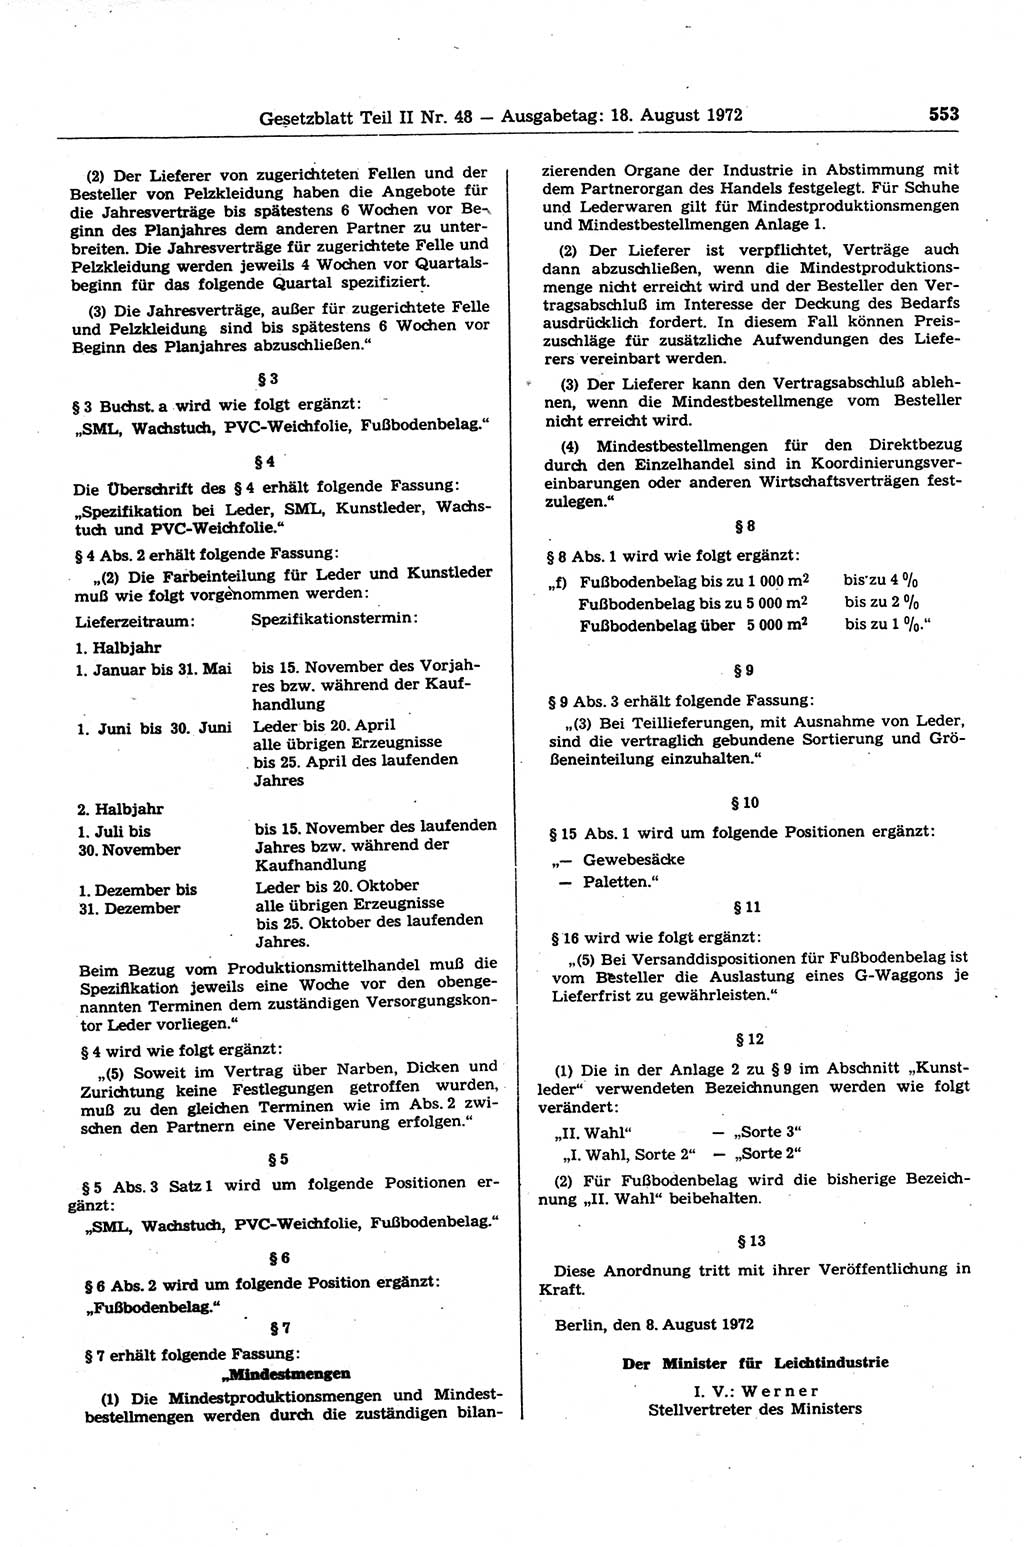 Gesetzblatt (GBl.) der Deutschen Demokratischen Republik (DDR) Teil ⅠⅠ 1972, Seite 553 (GBl. DDR ⅠⅠ 1972, S. 553)